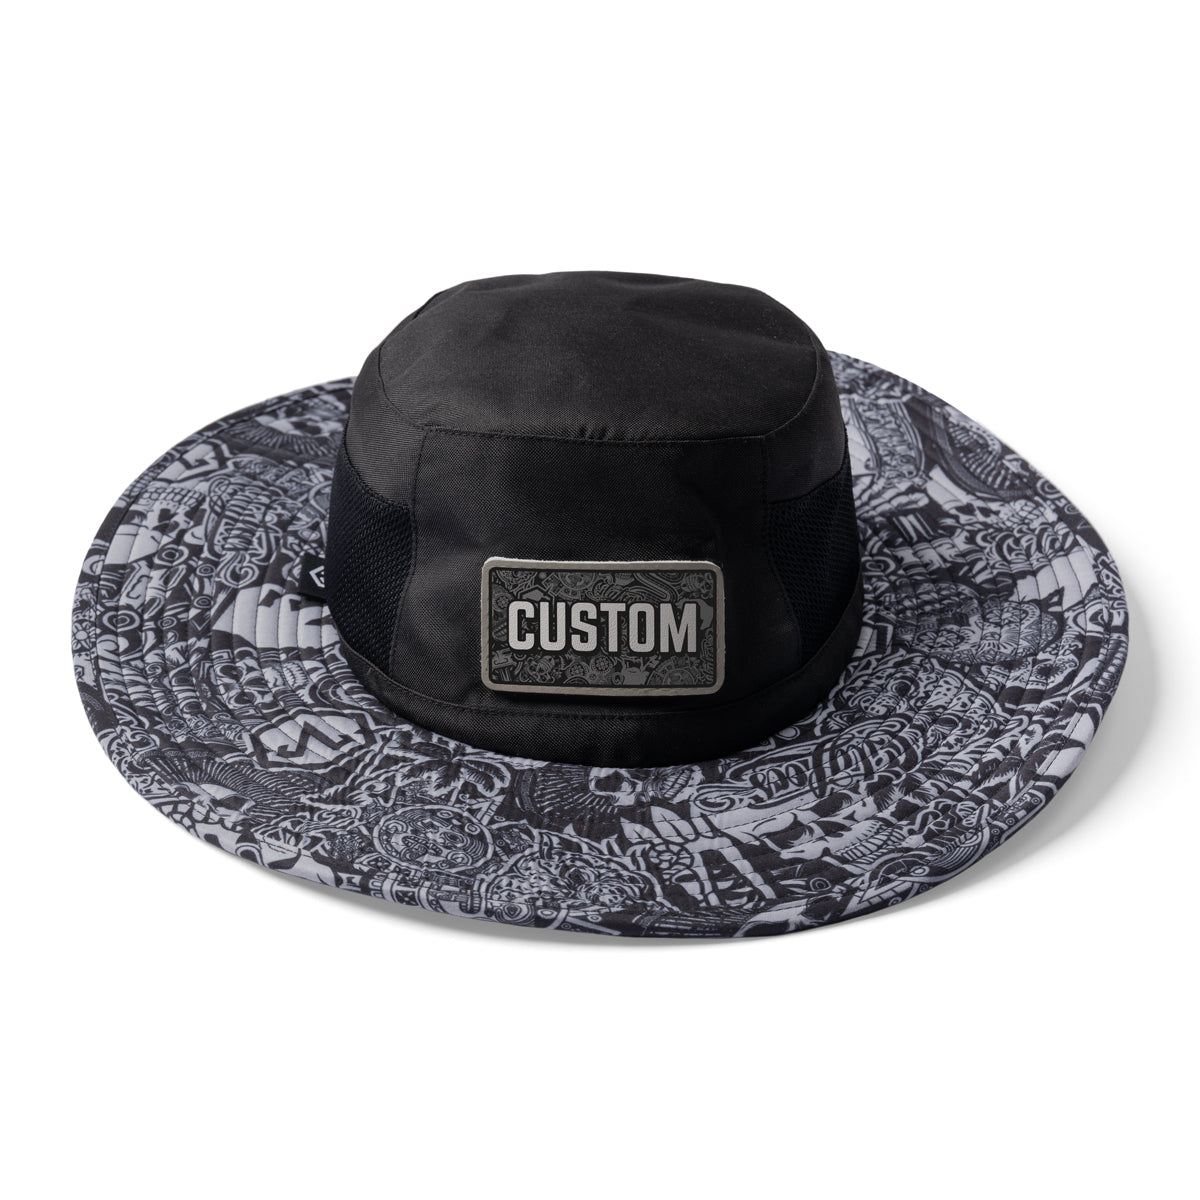 Custom Apollo Boonie Sun Hat